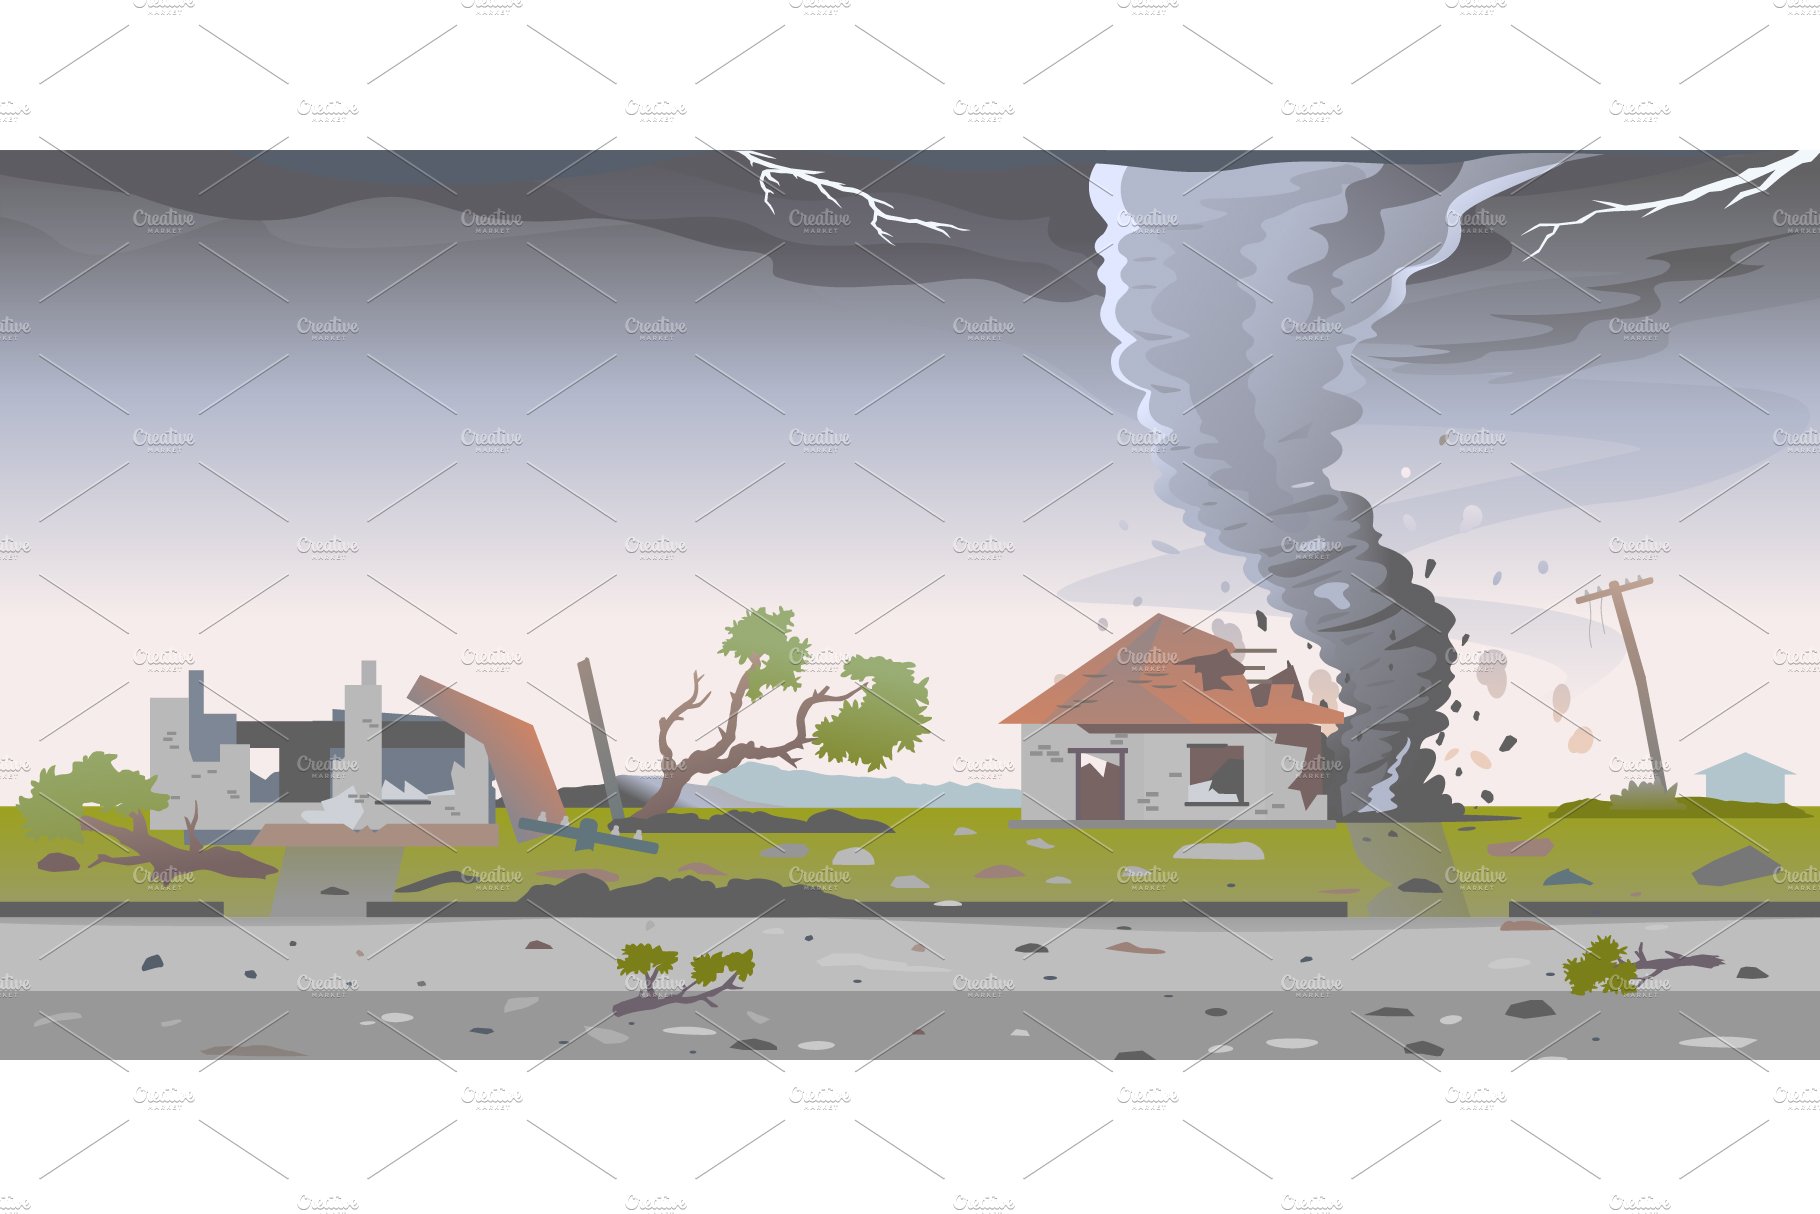 Tornado destroys houses cover image.